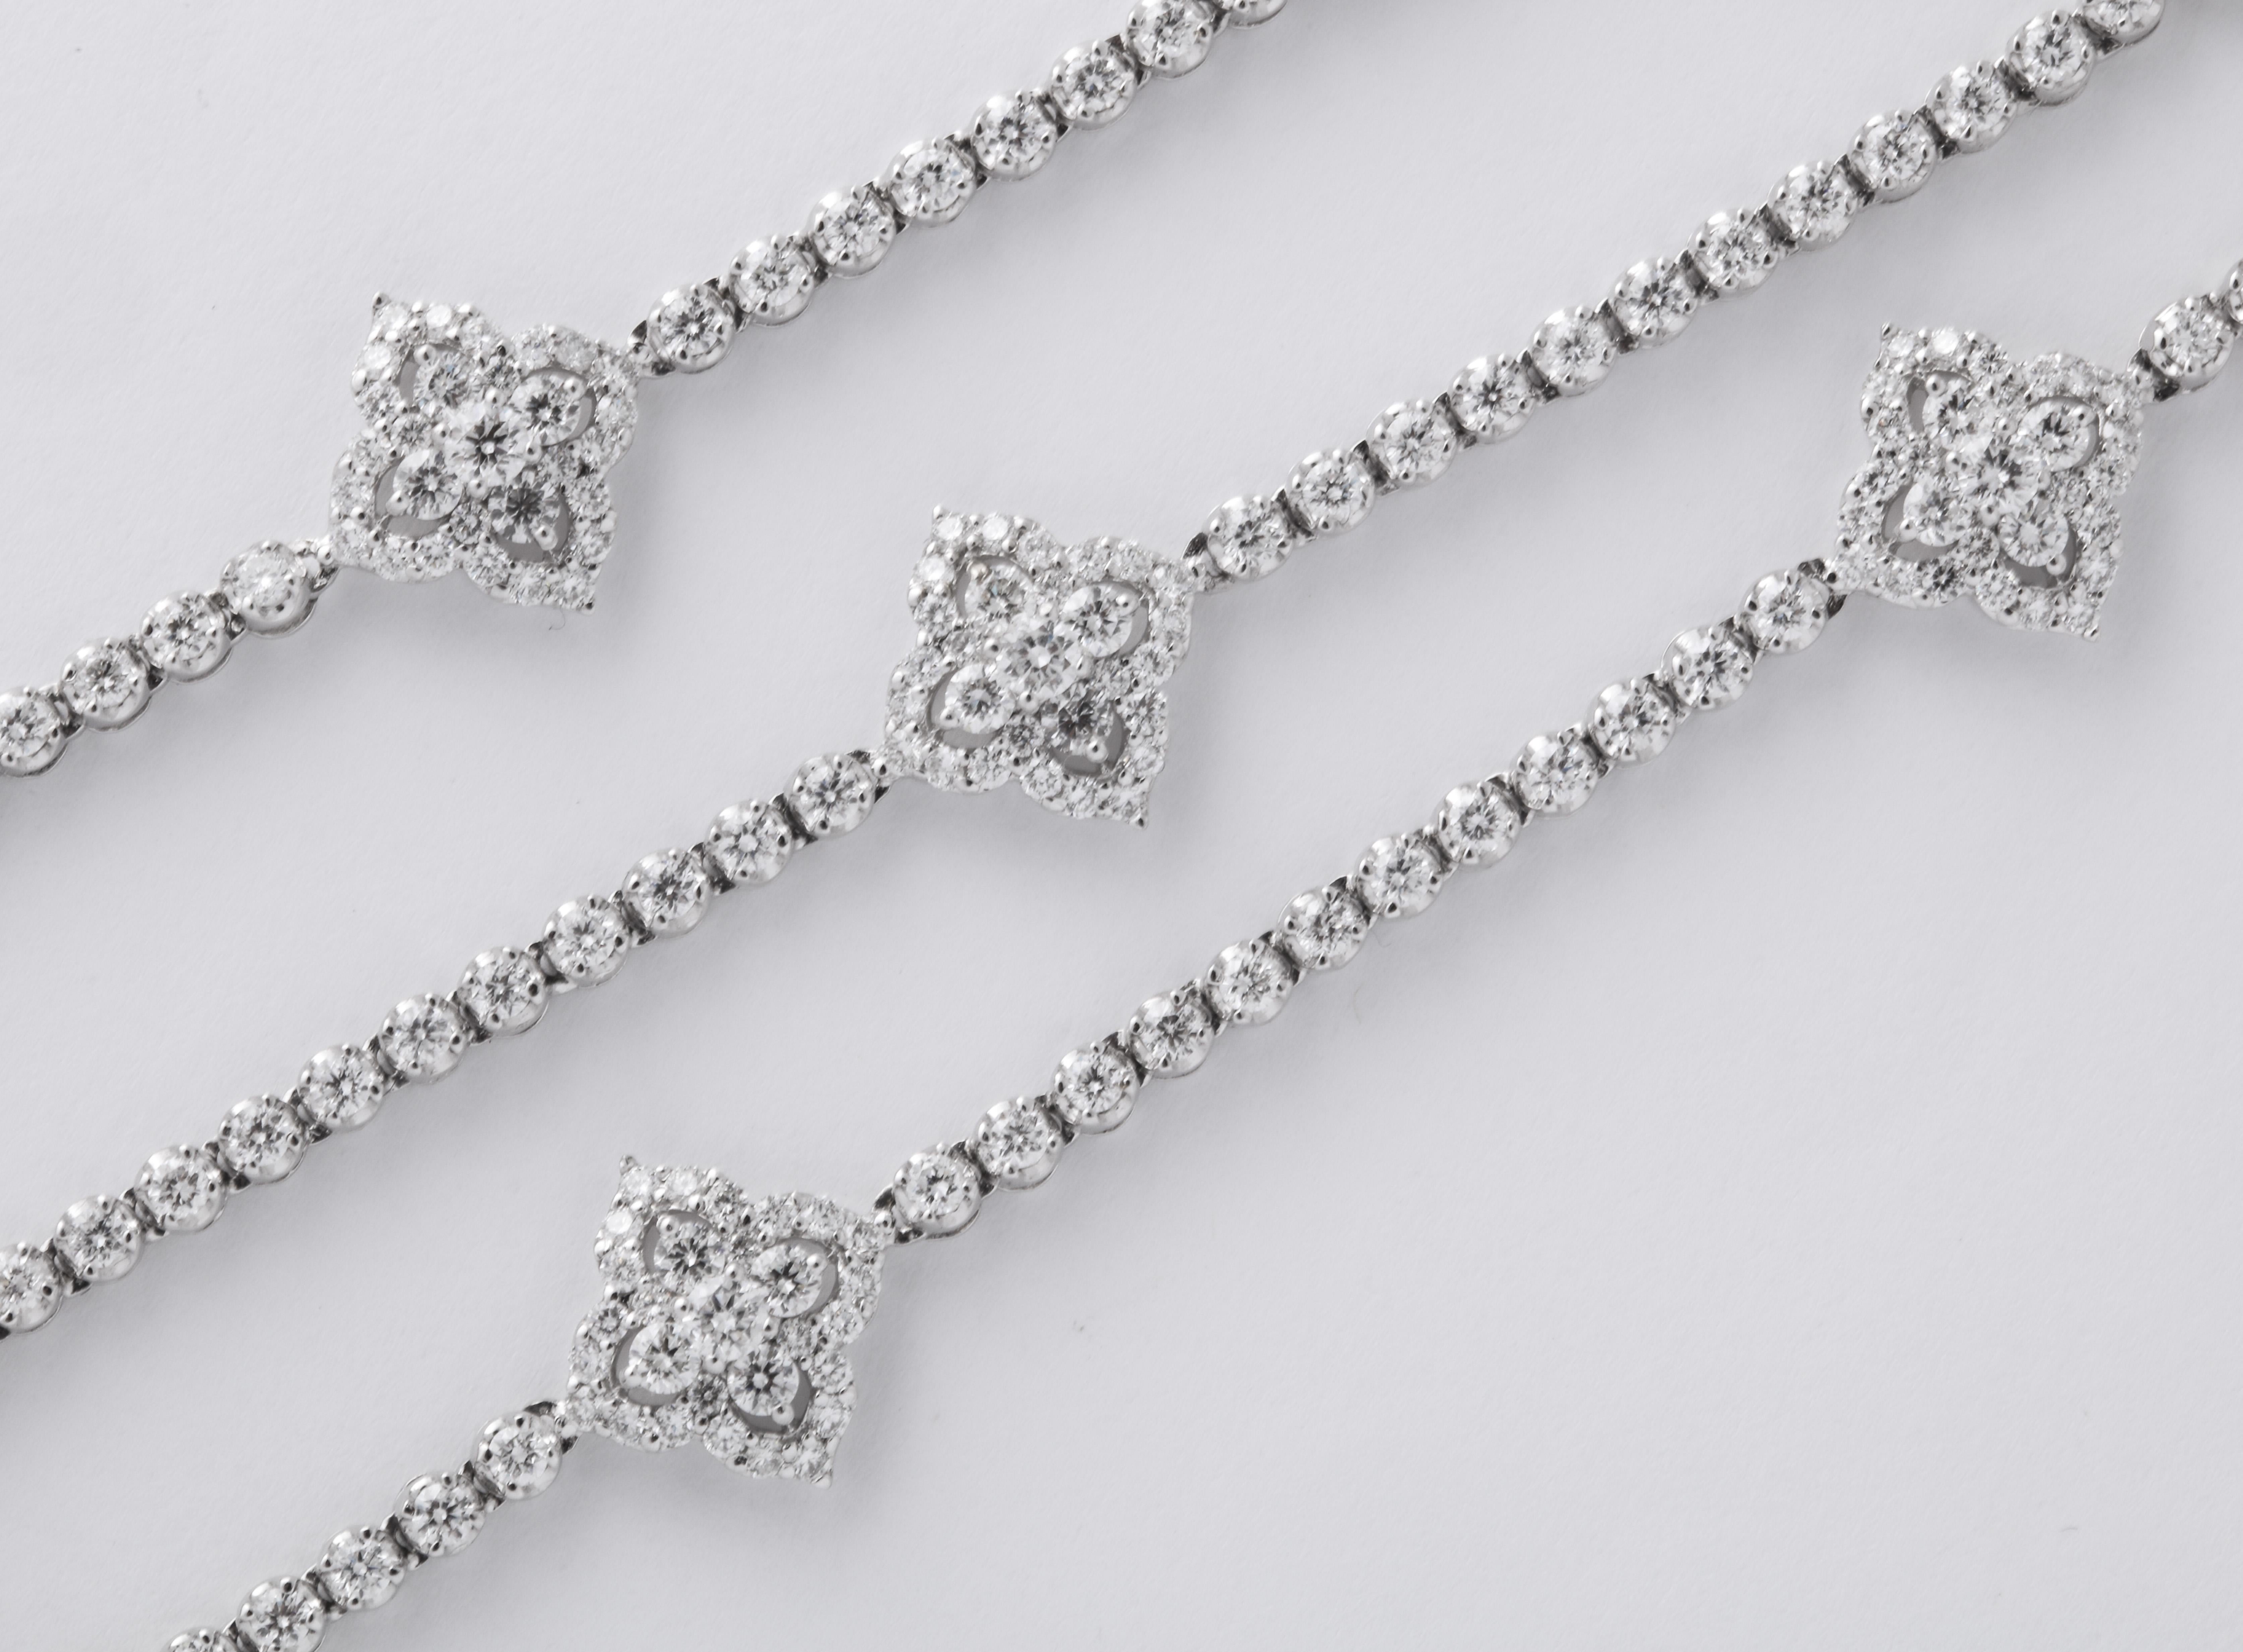 
Un FANTASTIQUE collier de diamants.

11,11 carats de diamants blancs ronds de taille brillant sertis dans de l'or blanc 18k.

30 pouces de long - les motifs en diamant mesurent 0,40 x 0,40 pouces environ. 

Un beau cadeau !
